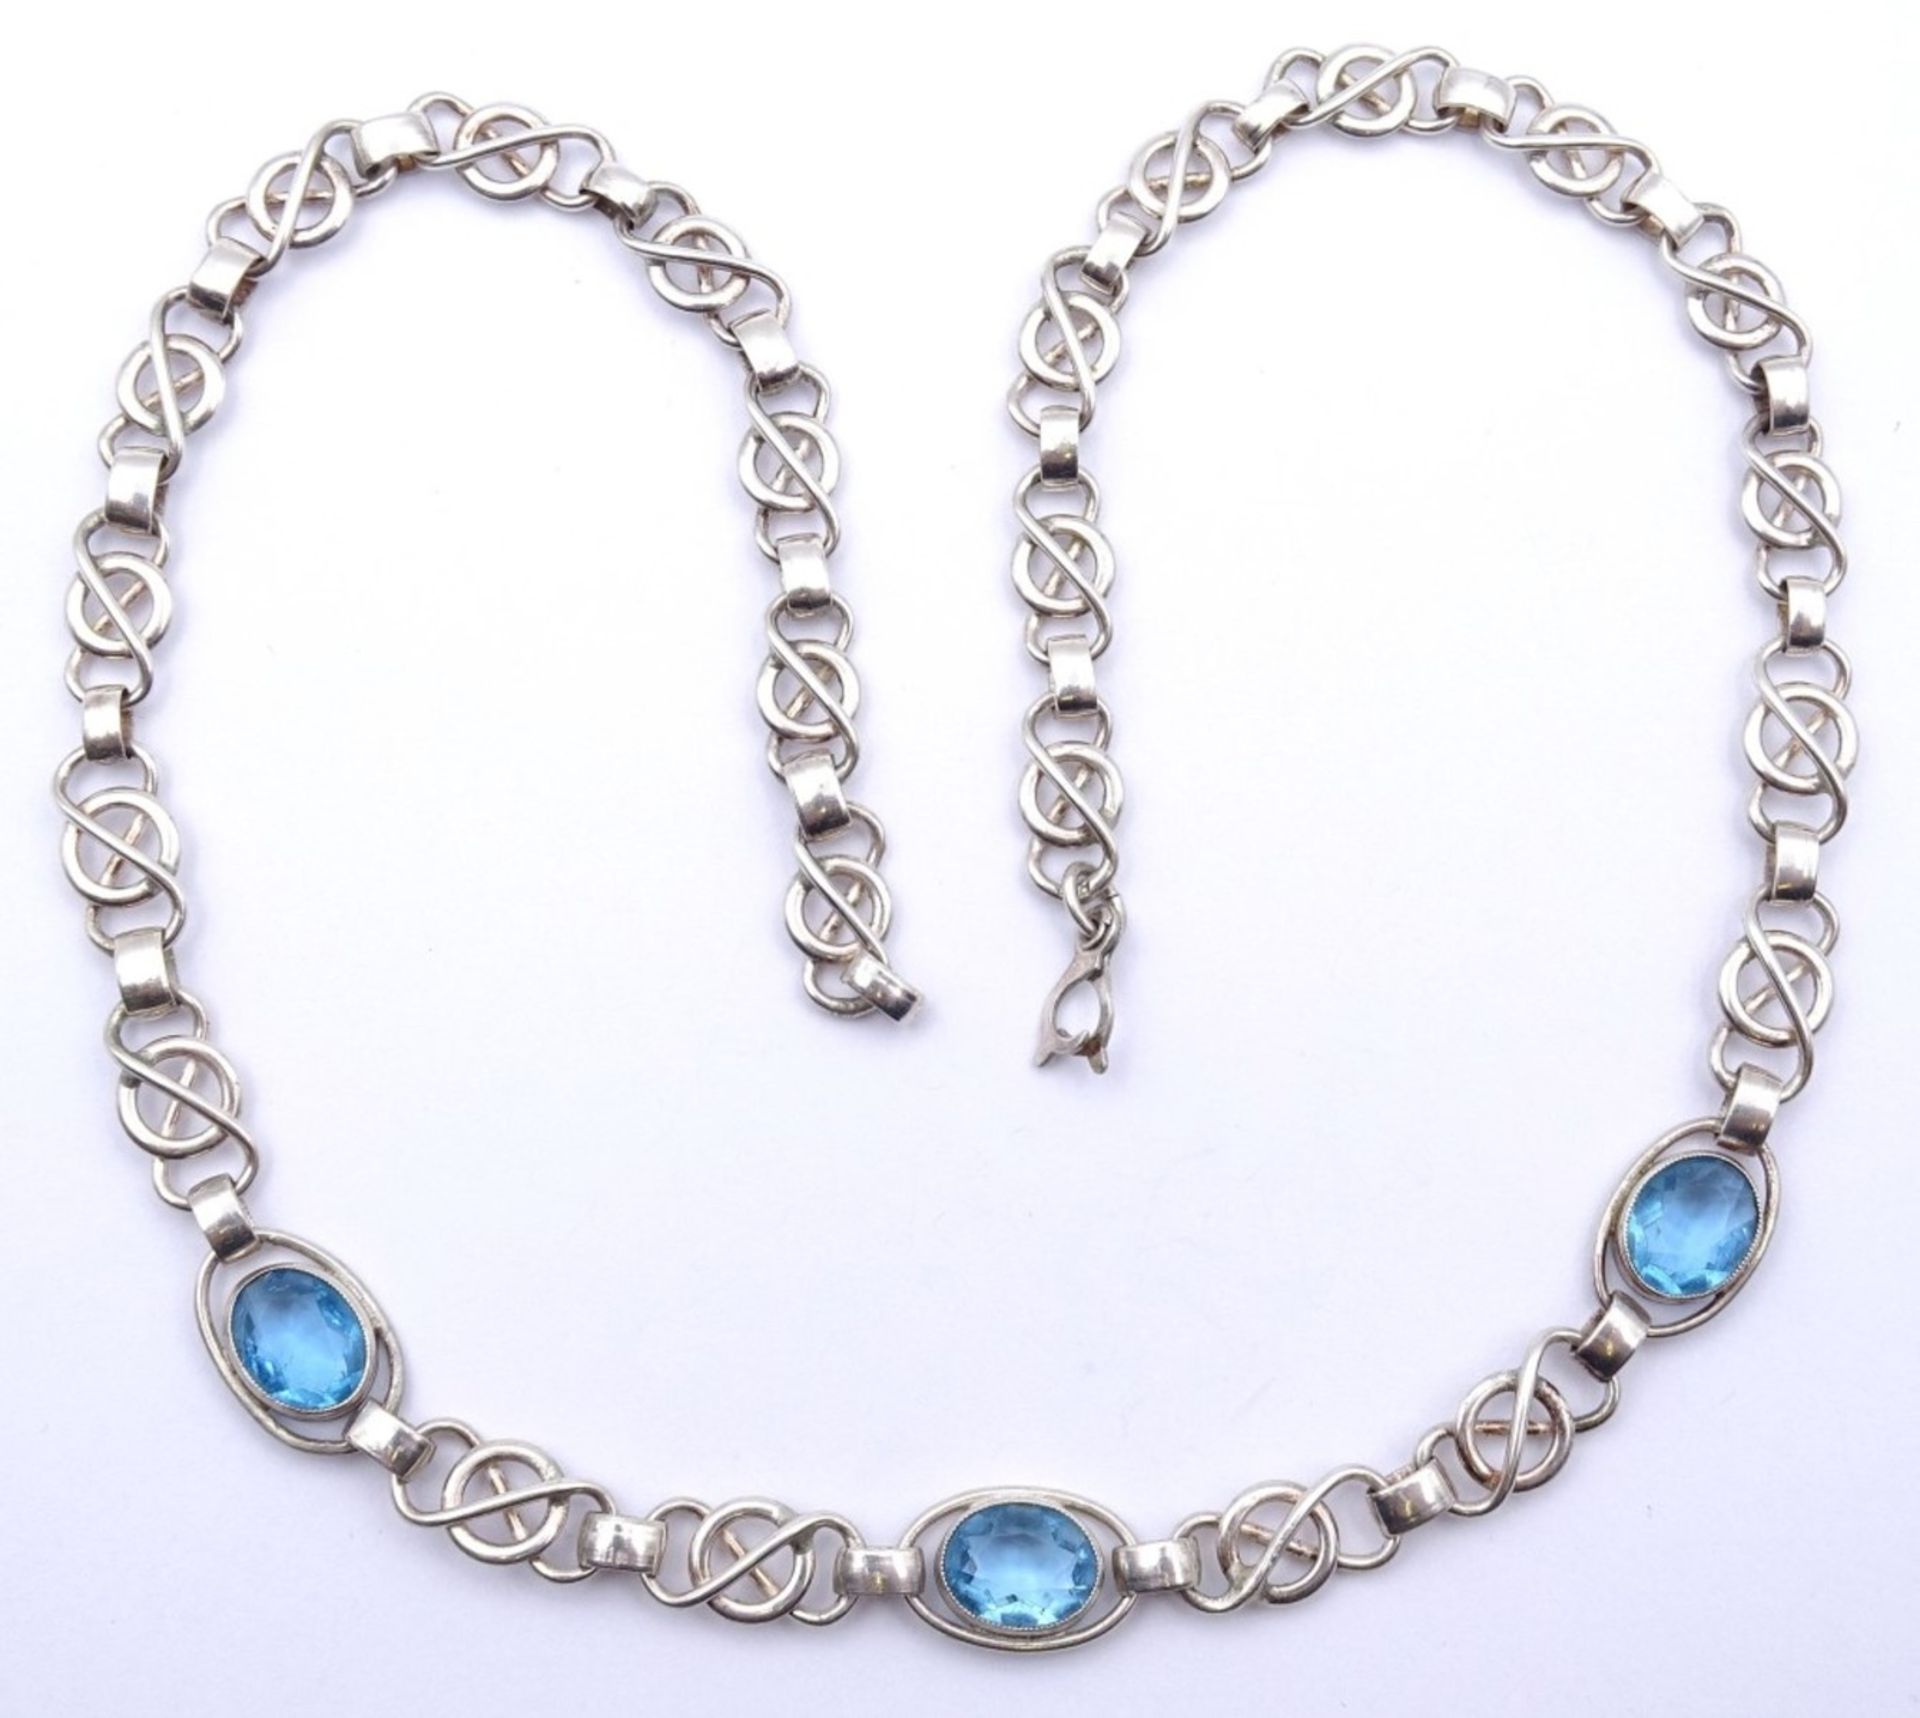 Halskette mit 3 oval facc.Blautopase,Silber 0.830, L- 46,5cm, 22,5gr.